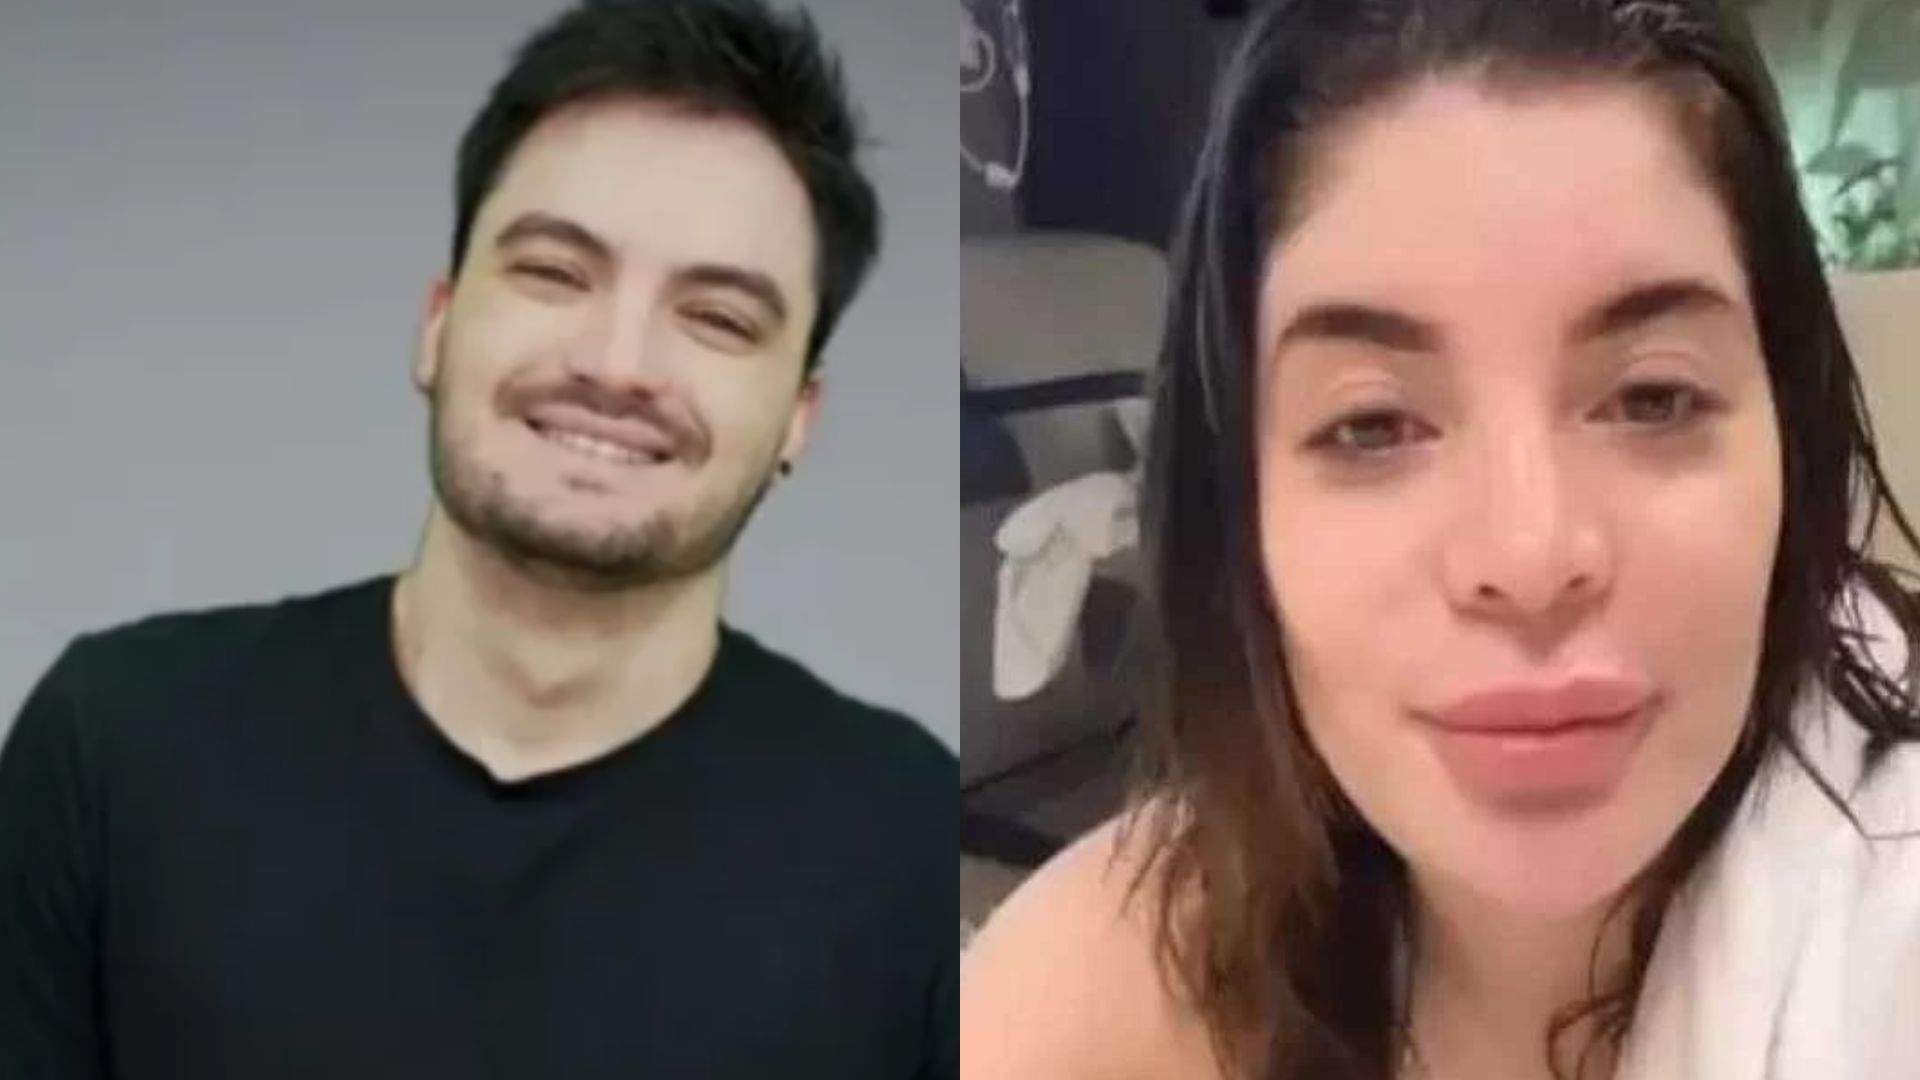 Felipe Neto e Gkay se beijam após troca de flertes nas redes sociais